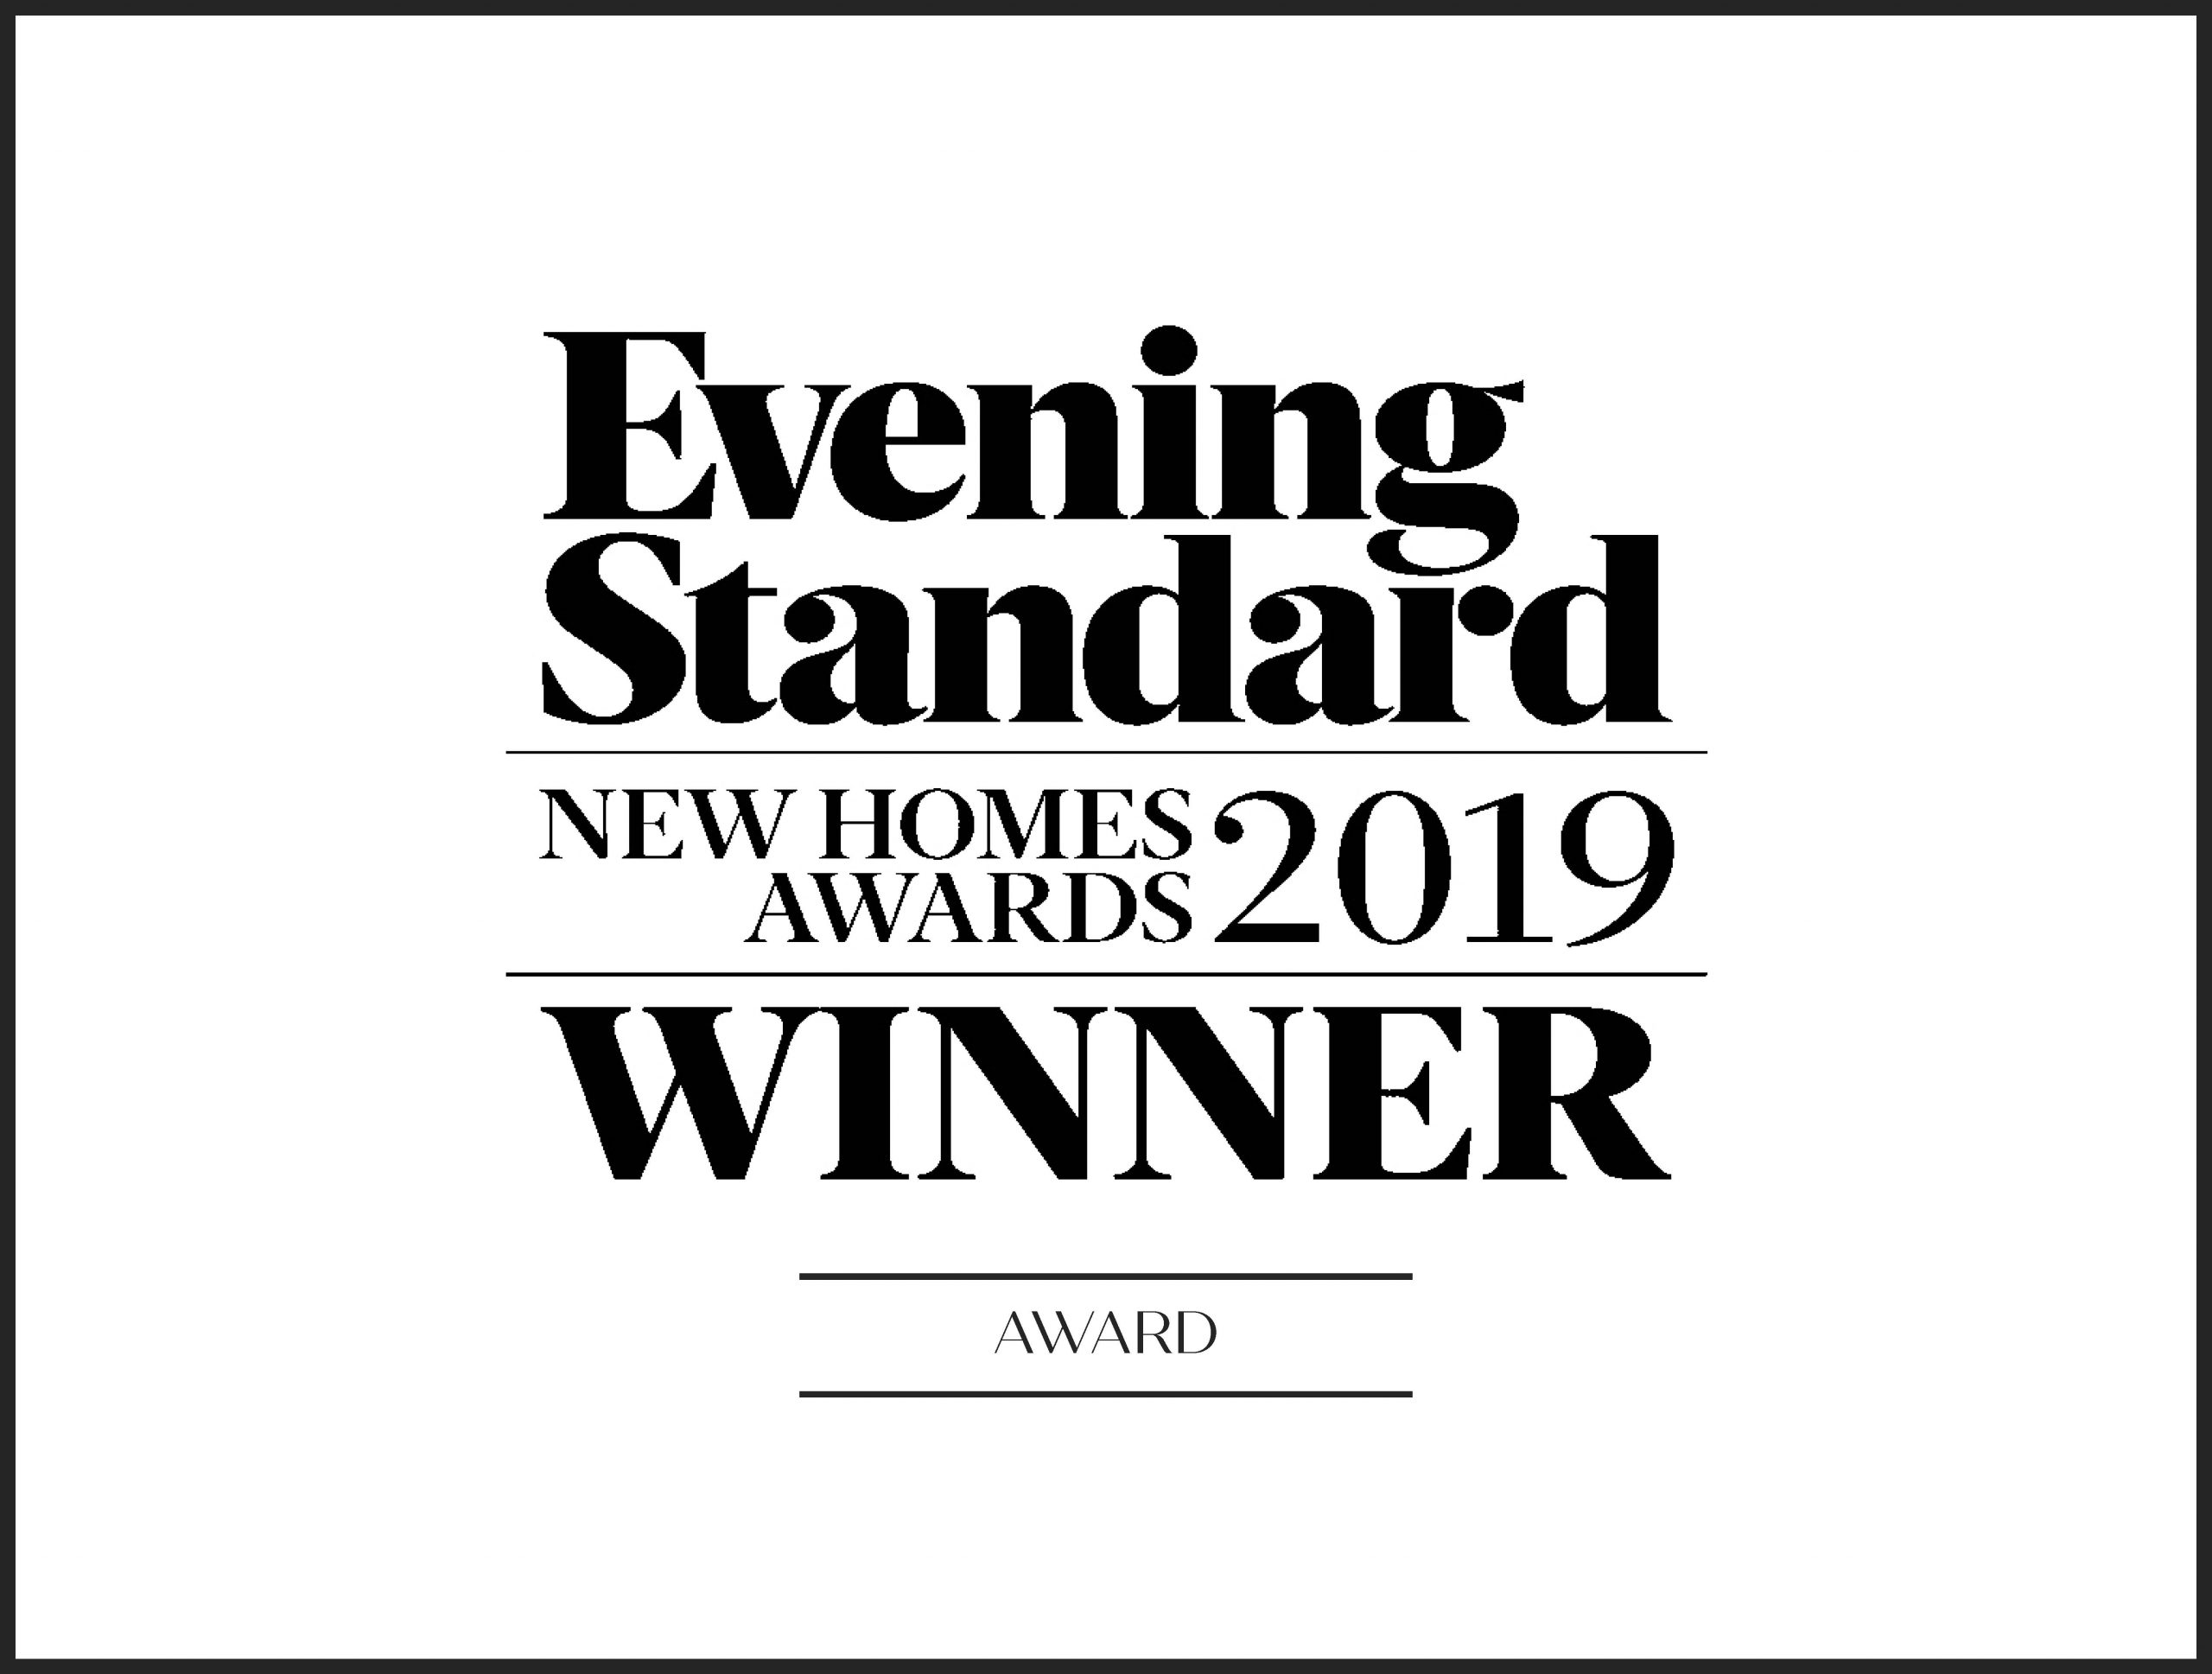 Evening Standard award winner 2019